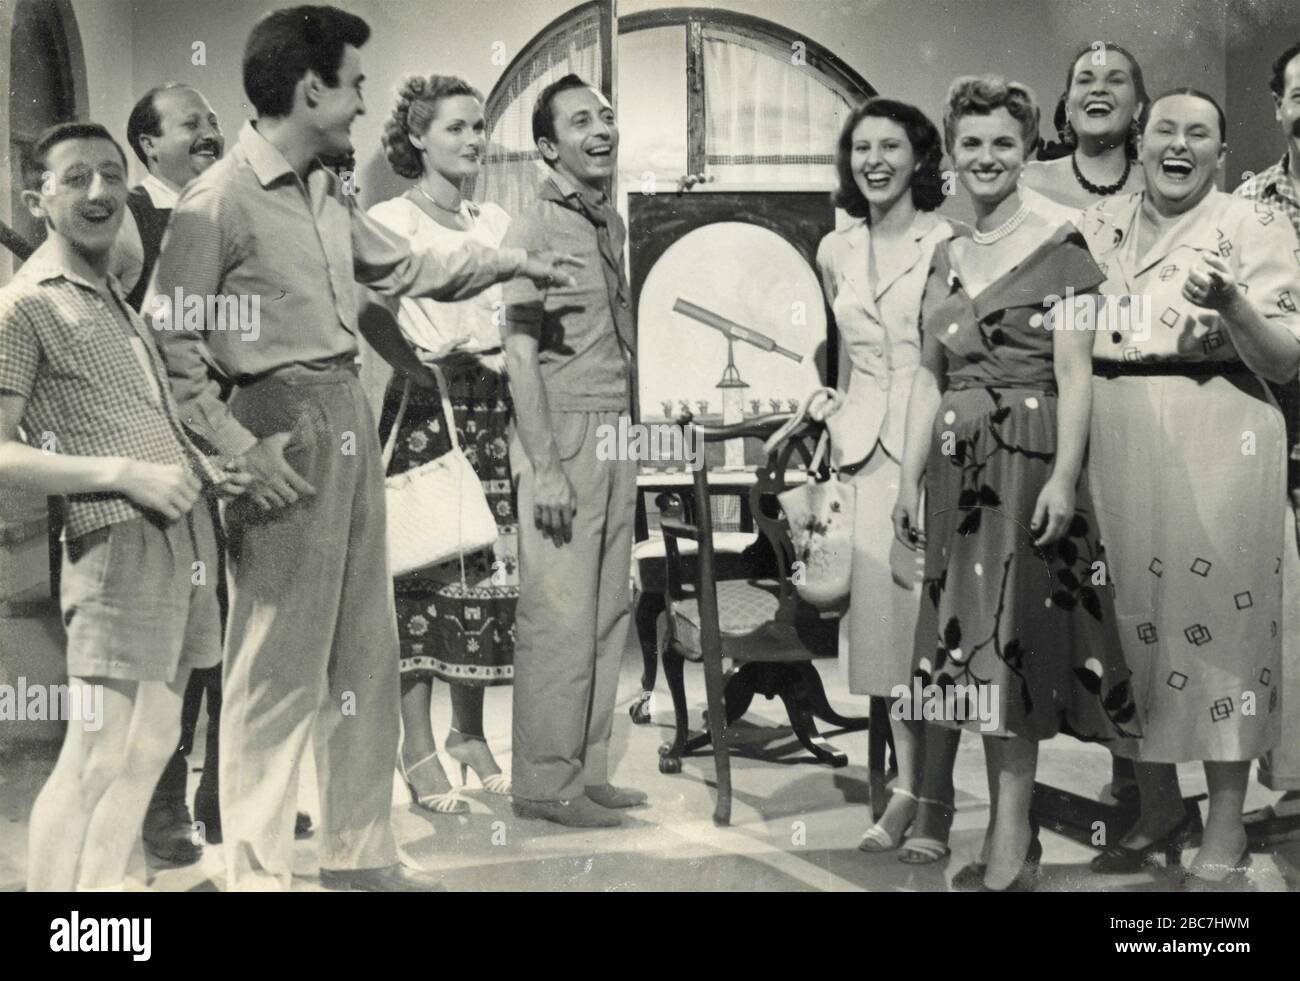 Acteurs italiens Carlo delle Piane, Vittorio Gassman, Ave Ninchi, et autres, années 1960 Banque D'Images